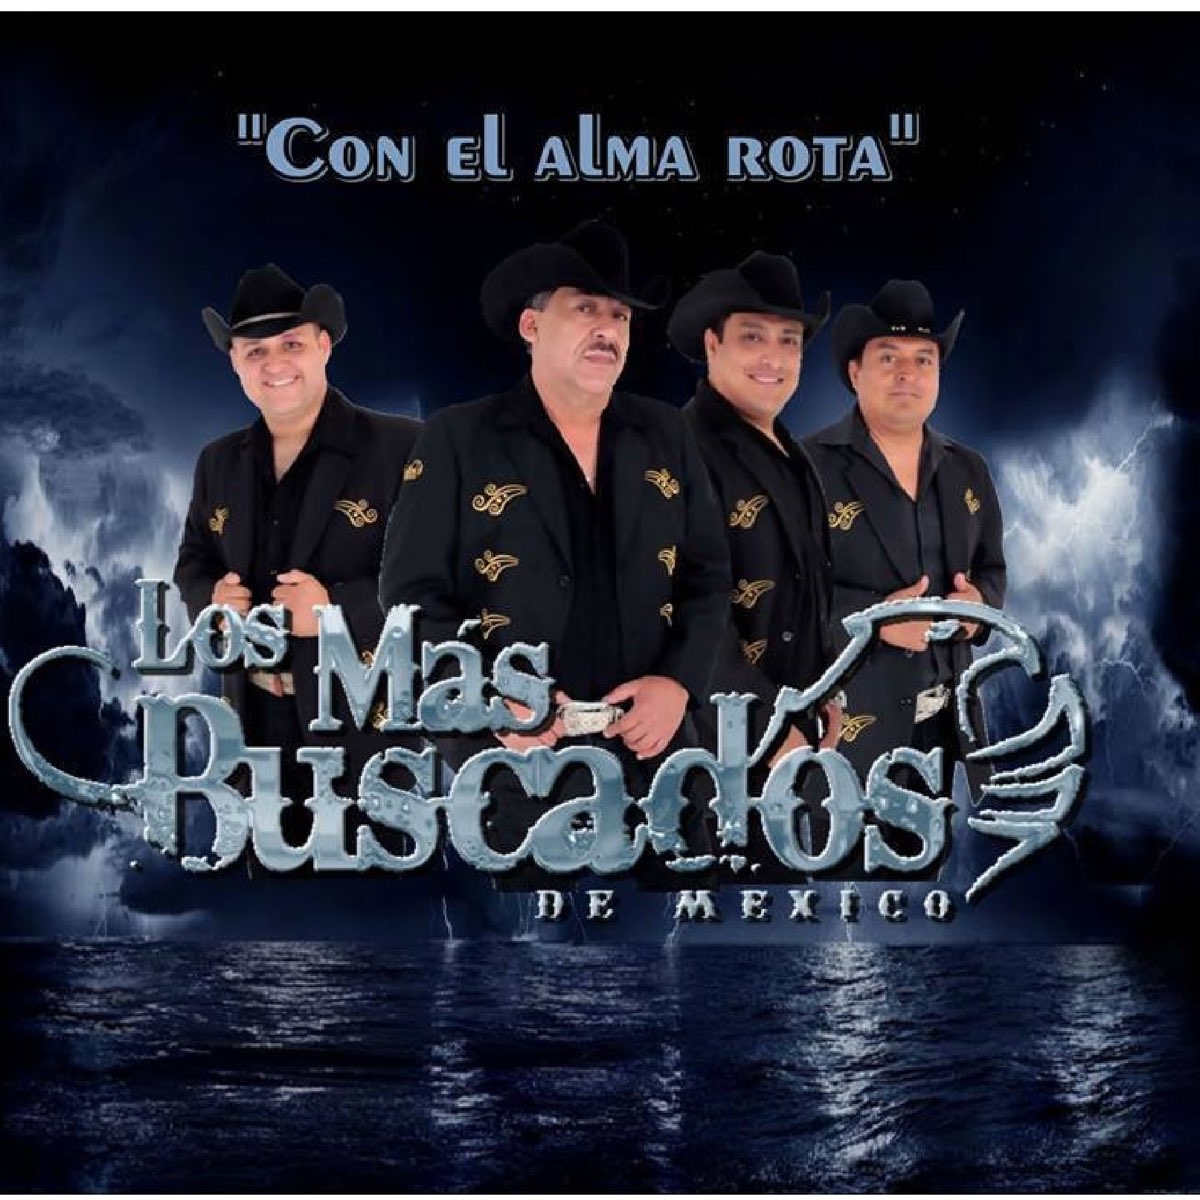 Con El Alma Rota by Los Mas Buscados de Mexico on Apple Music